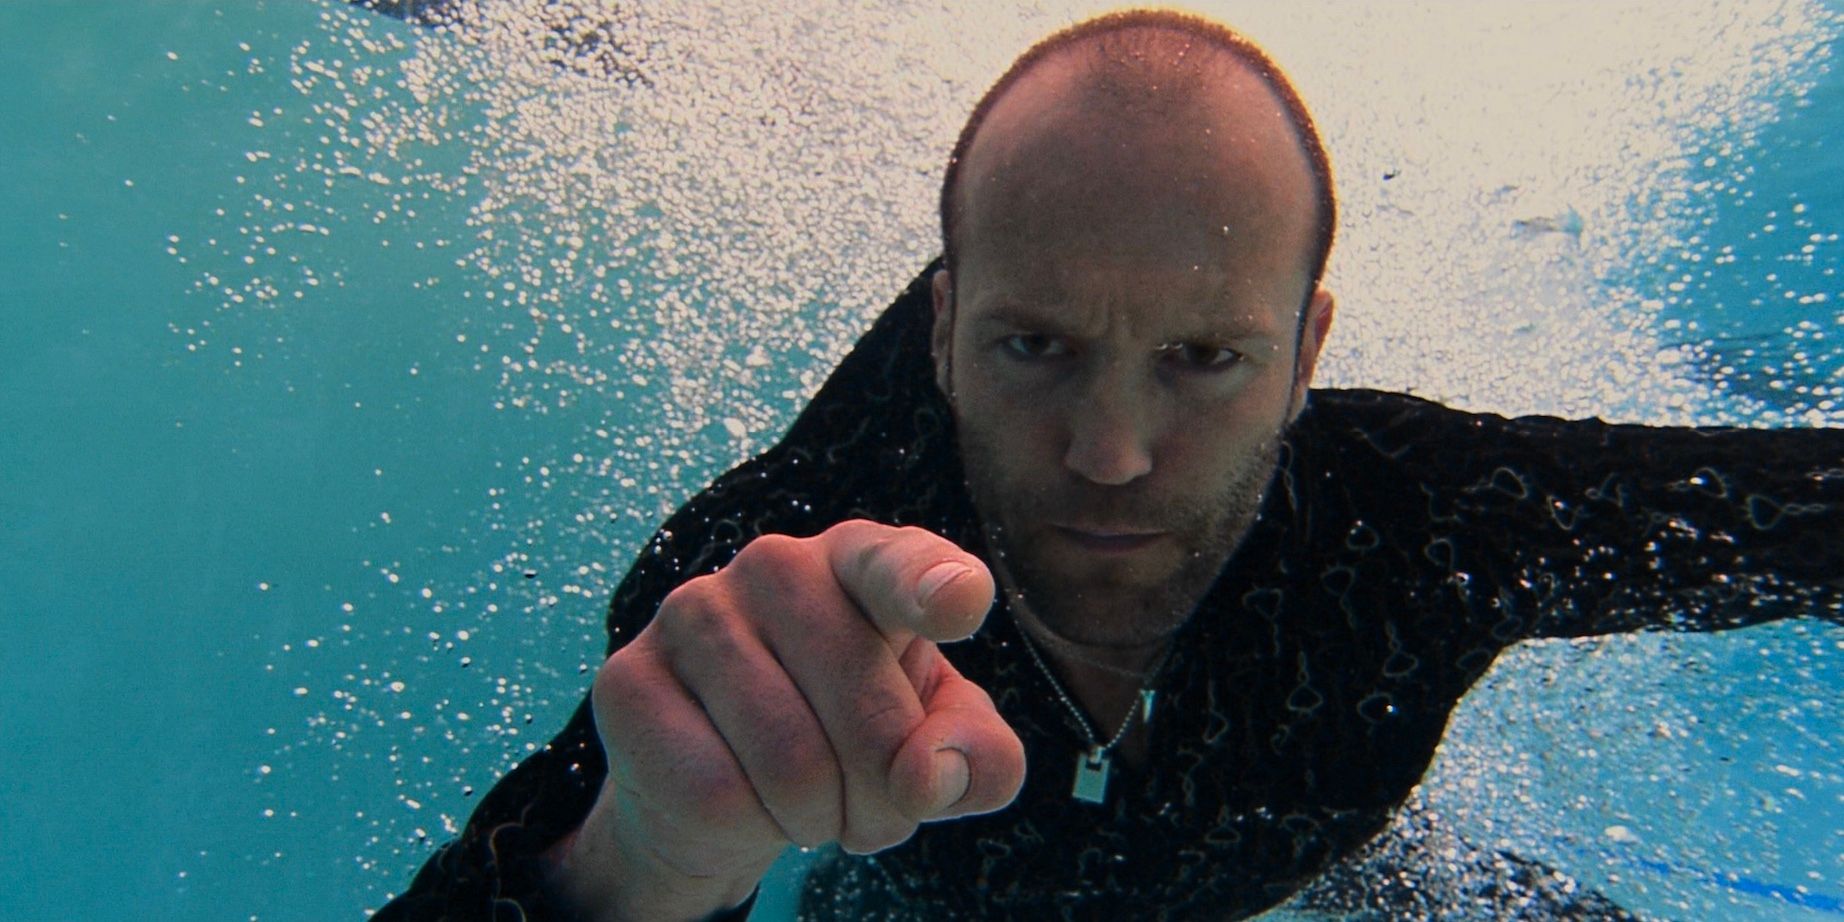 Jason Statham underwater in Crank 